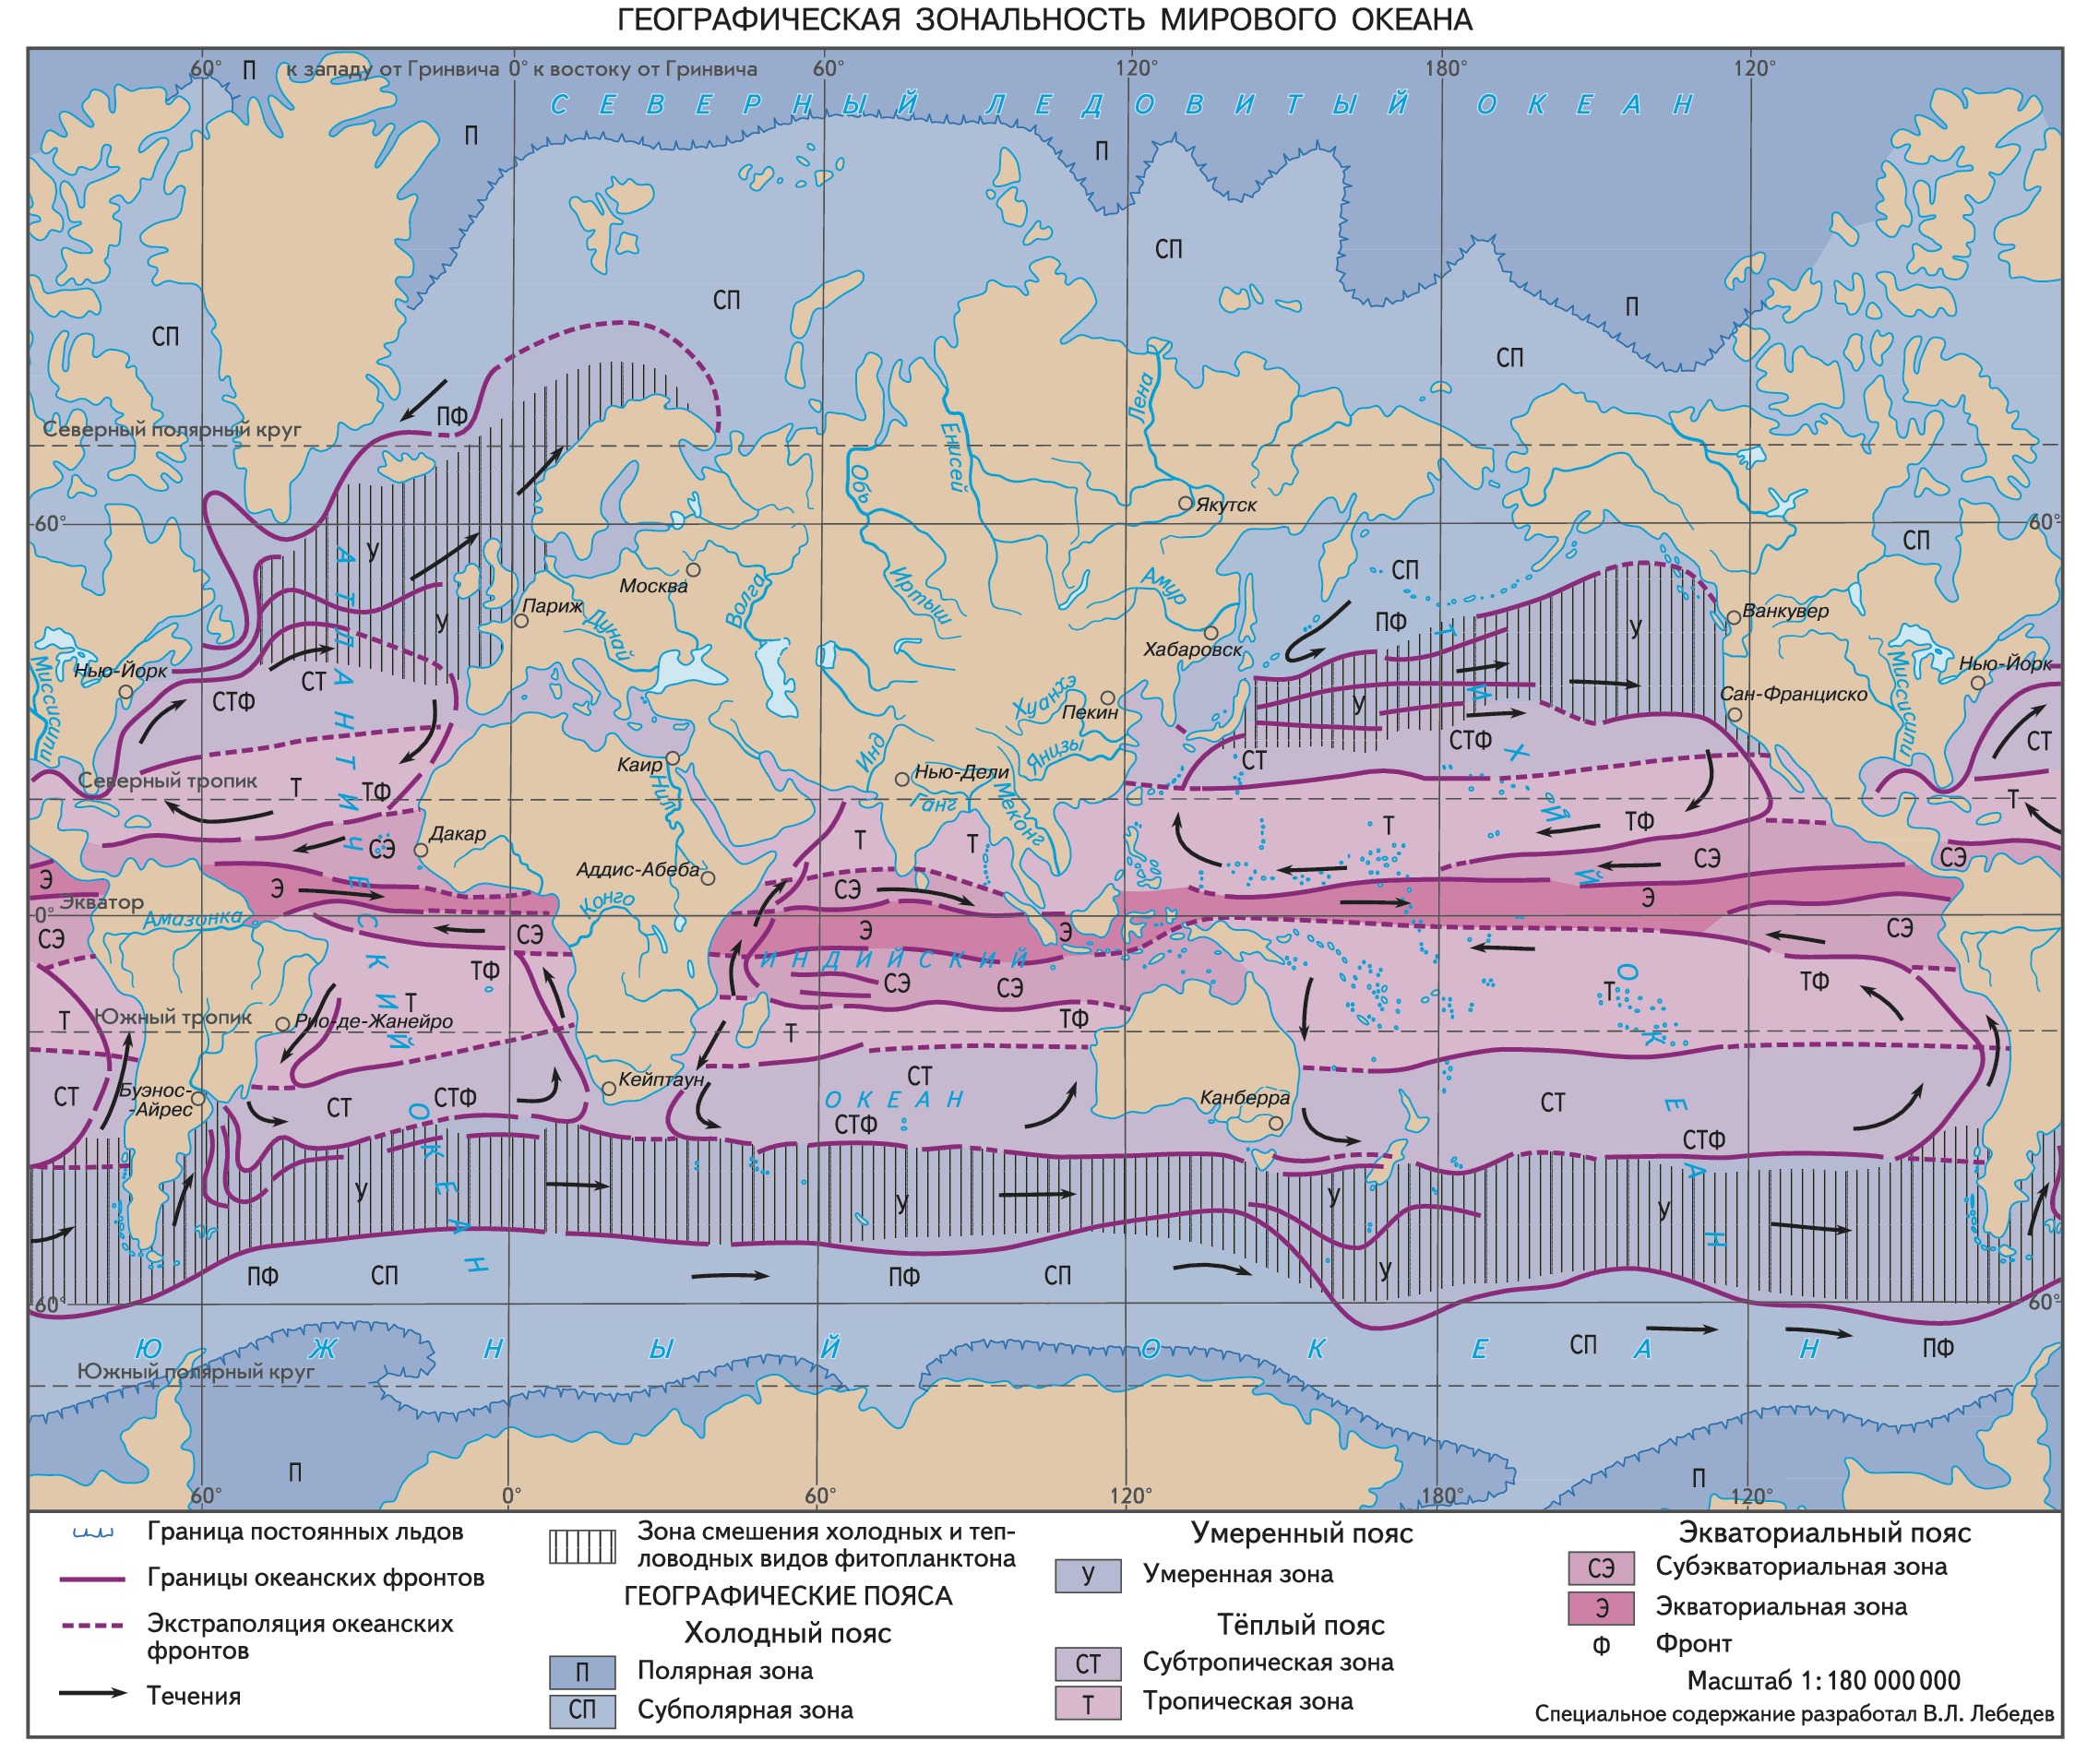 Климатических поясах расположен тихий океан. Климатические пояса Атлантического океана на карте. Горизонтальная зональность мирового океана.. Географические пояса и зоны. Широтные зоны мирового океана.